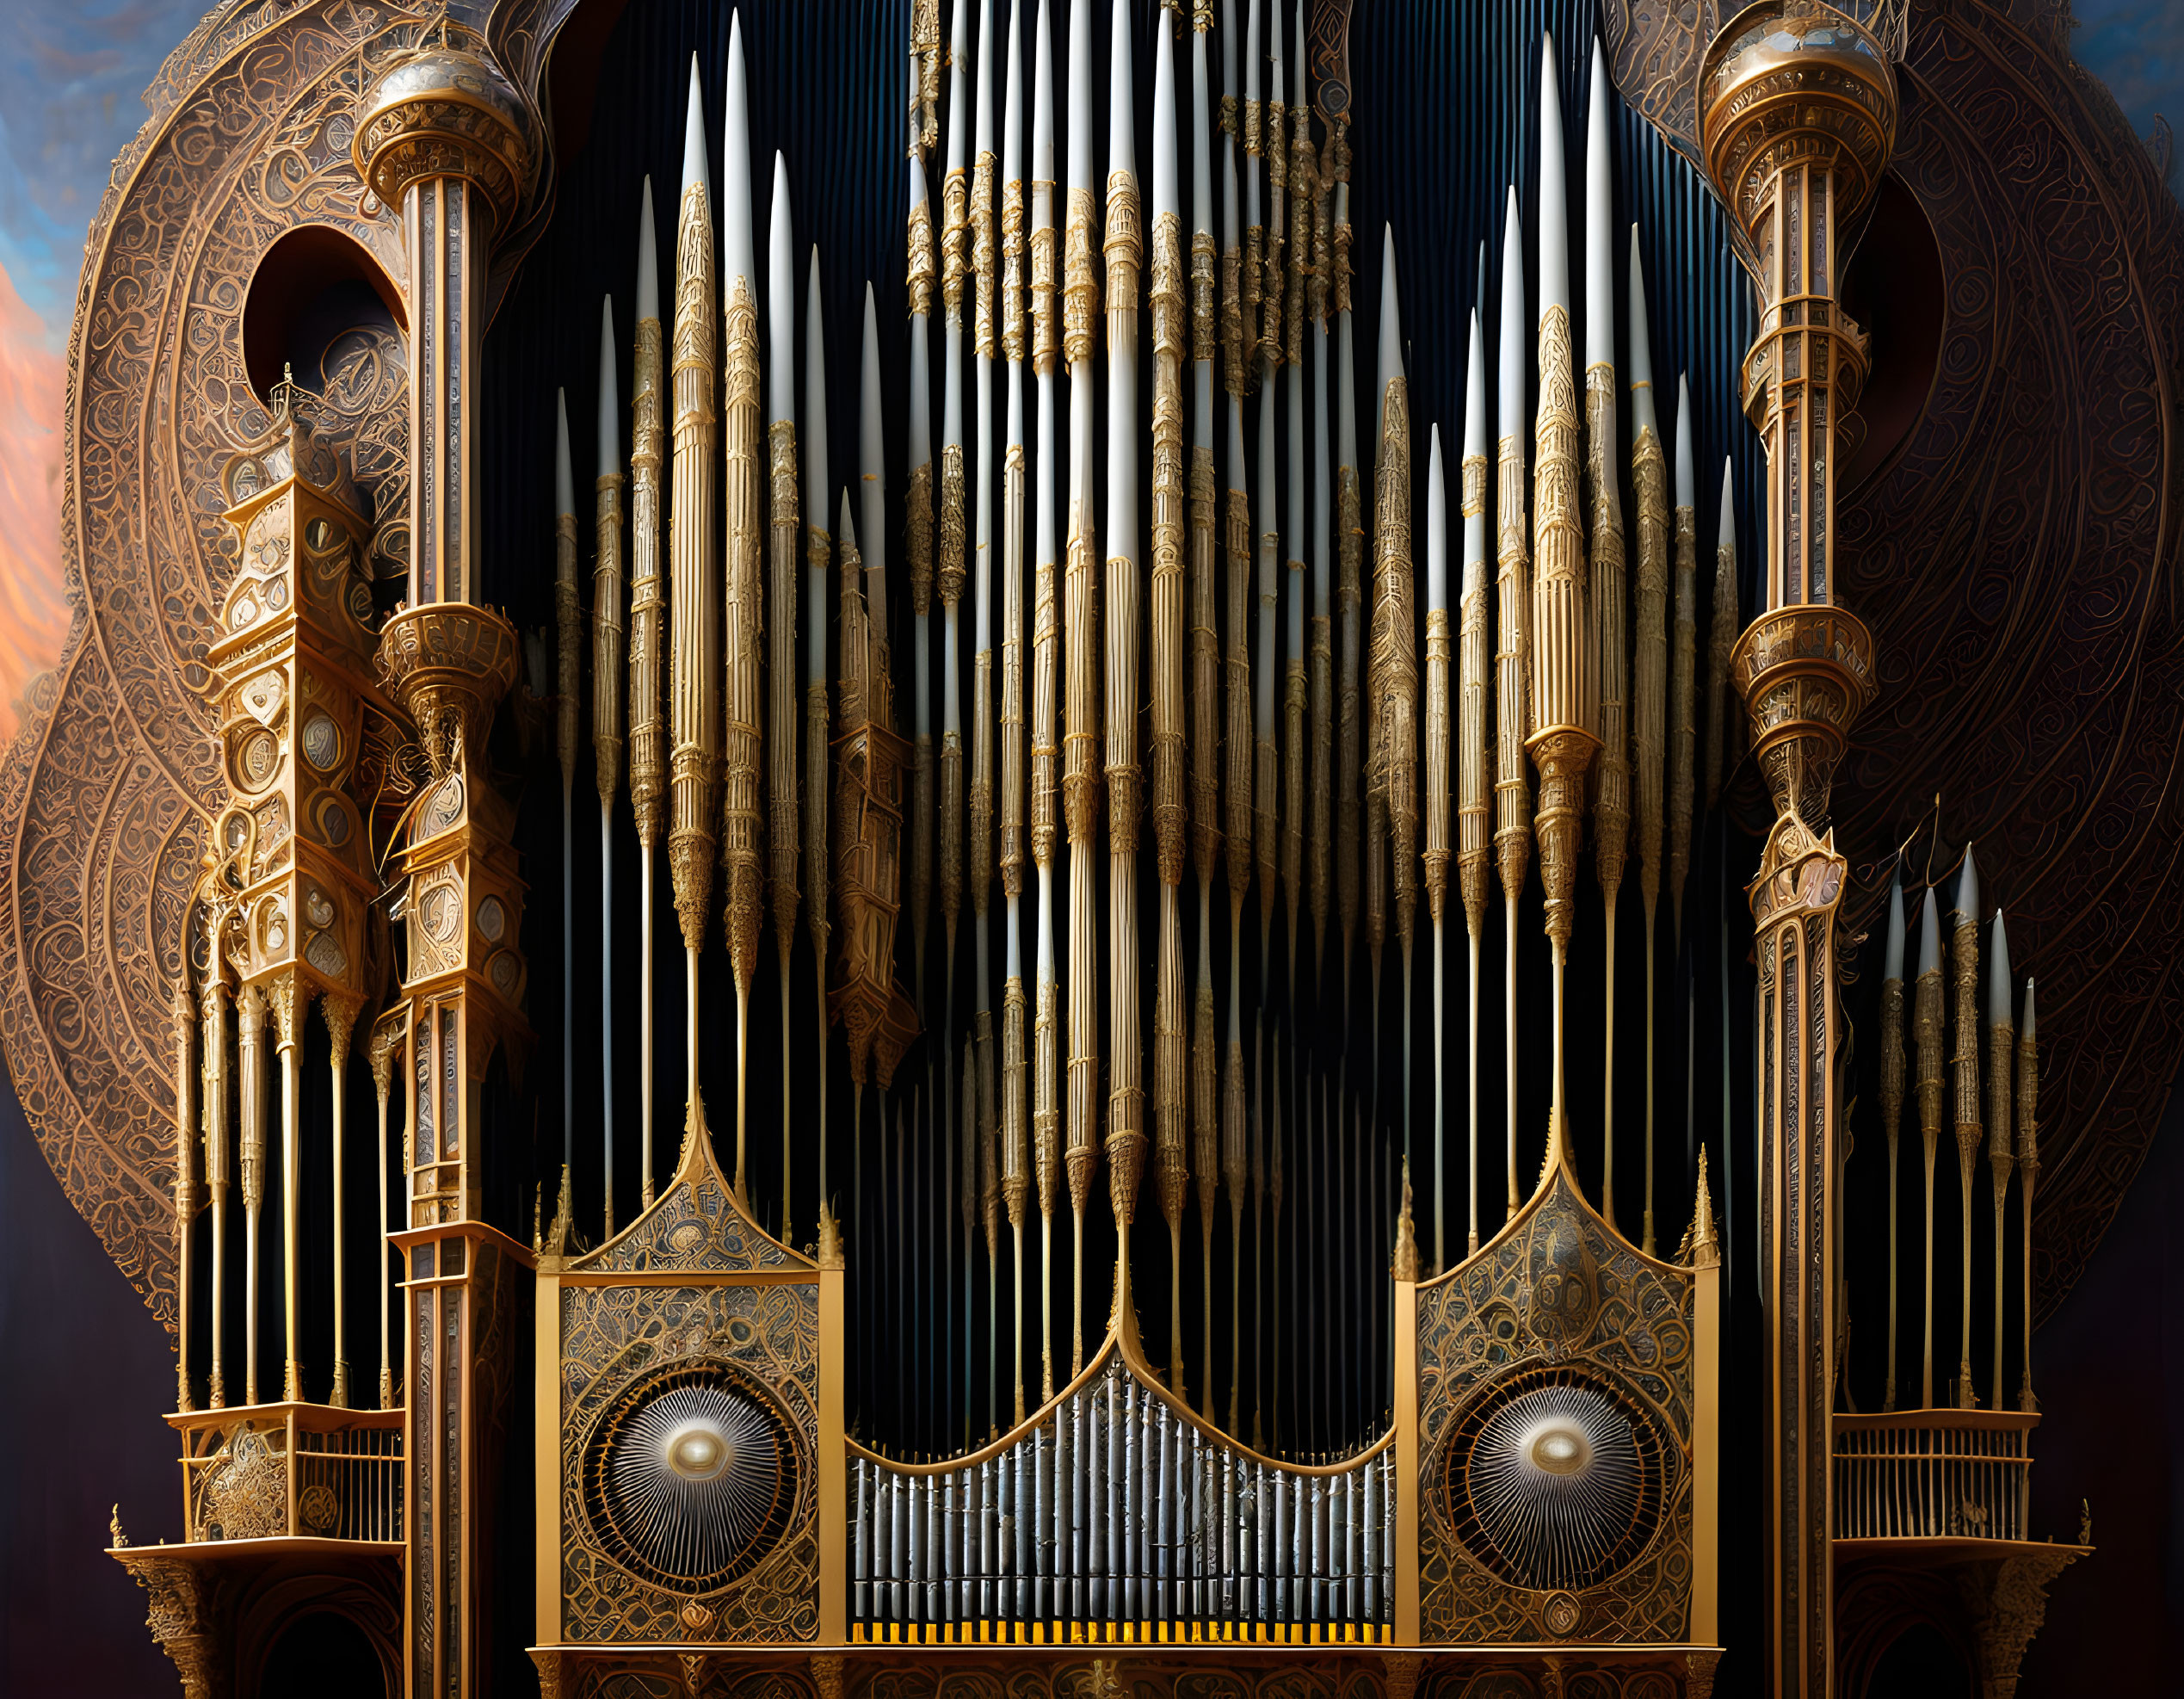 Pipe Organ Surreal